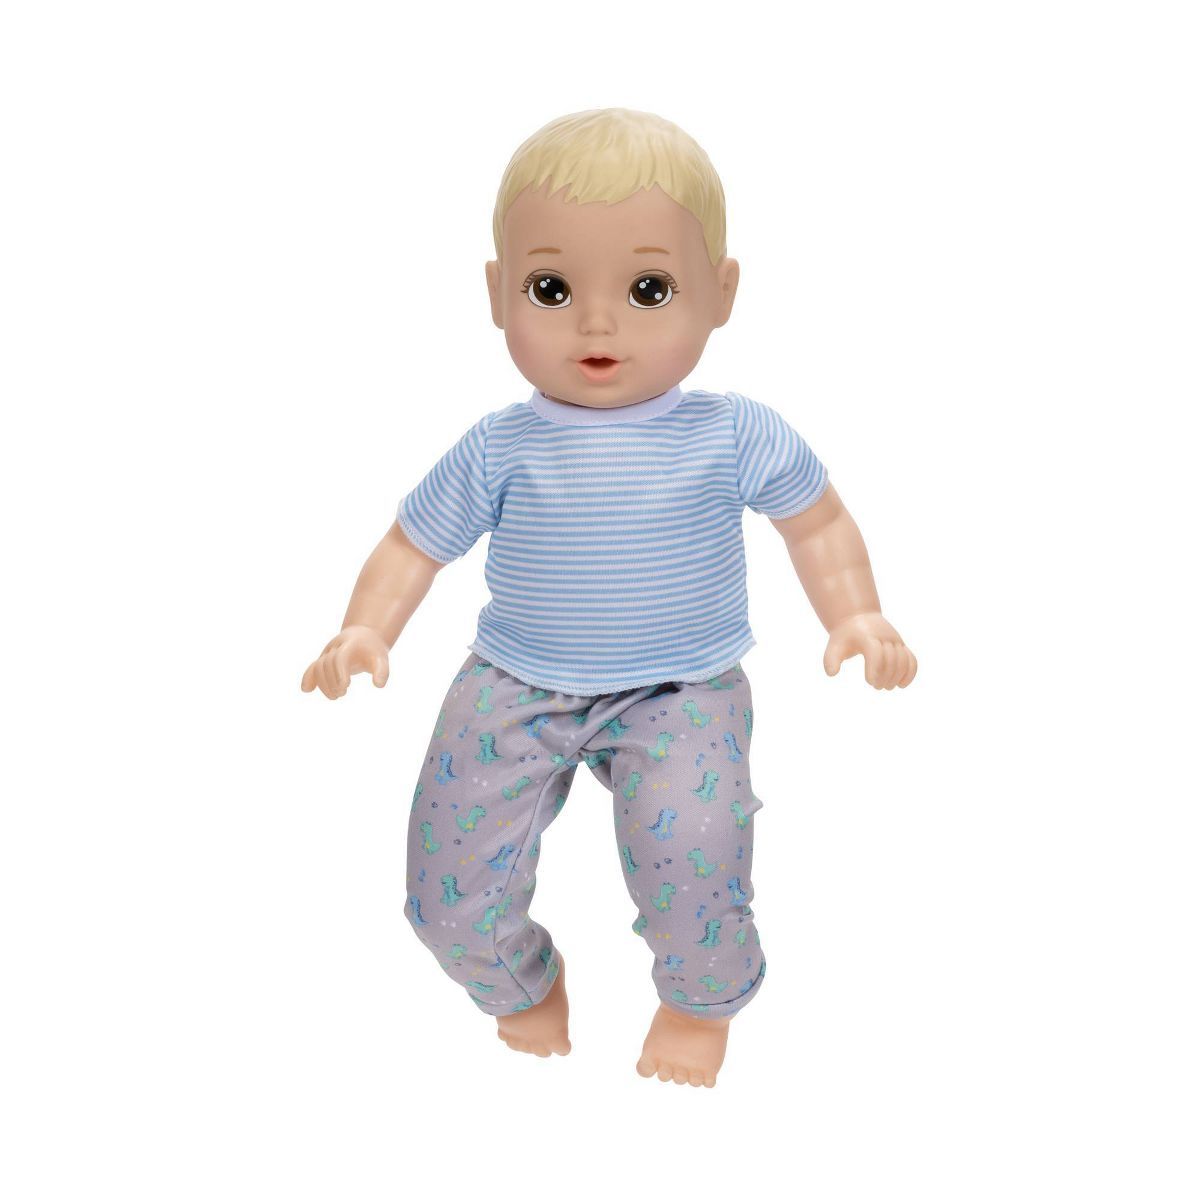 Perfectly Cute 14" Boy Baby Doll - Blonde Hair, Brown Eyes | Target